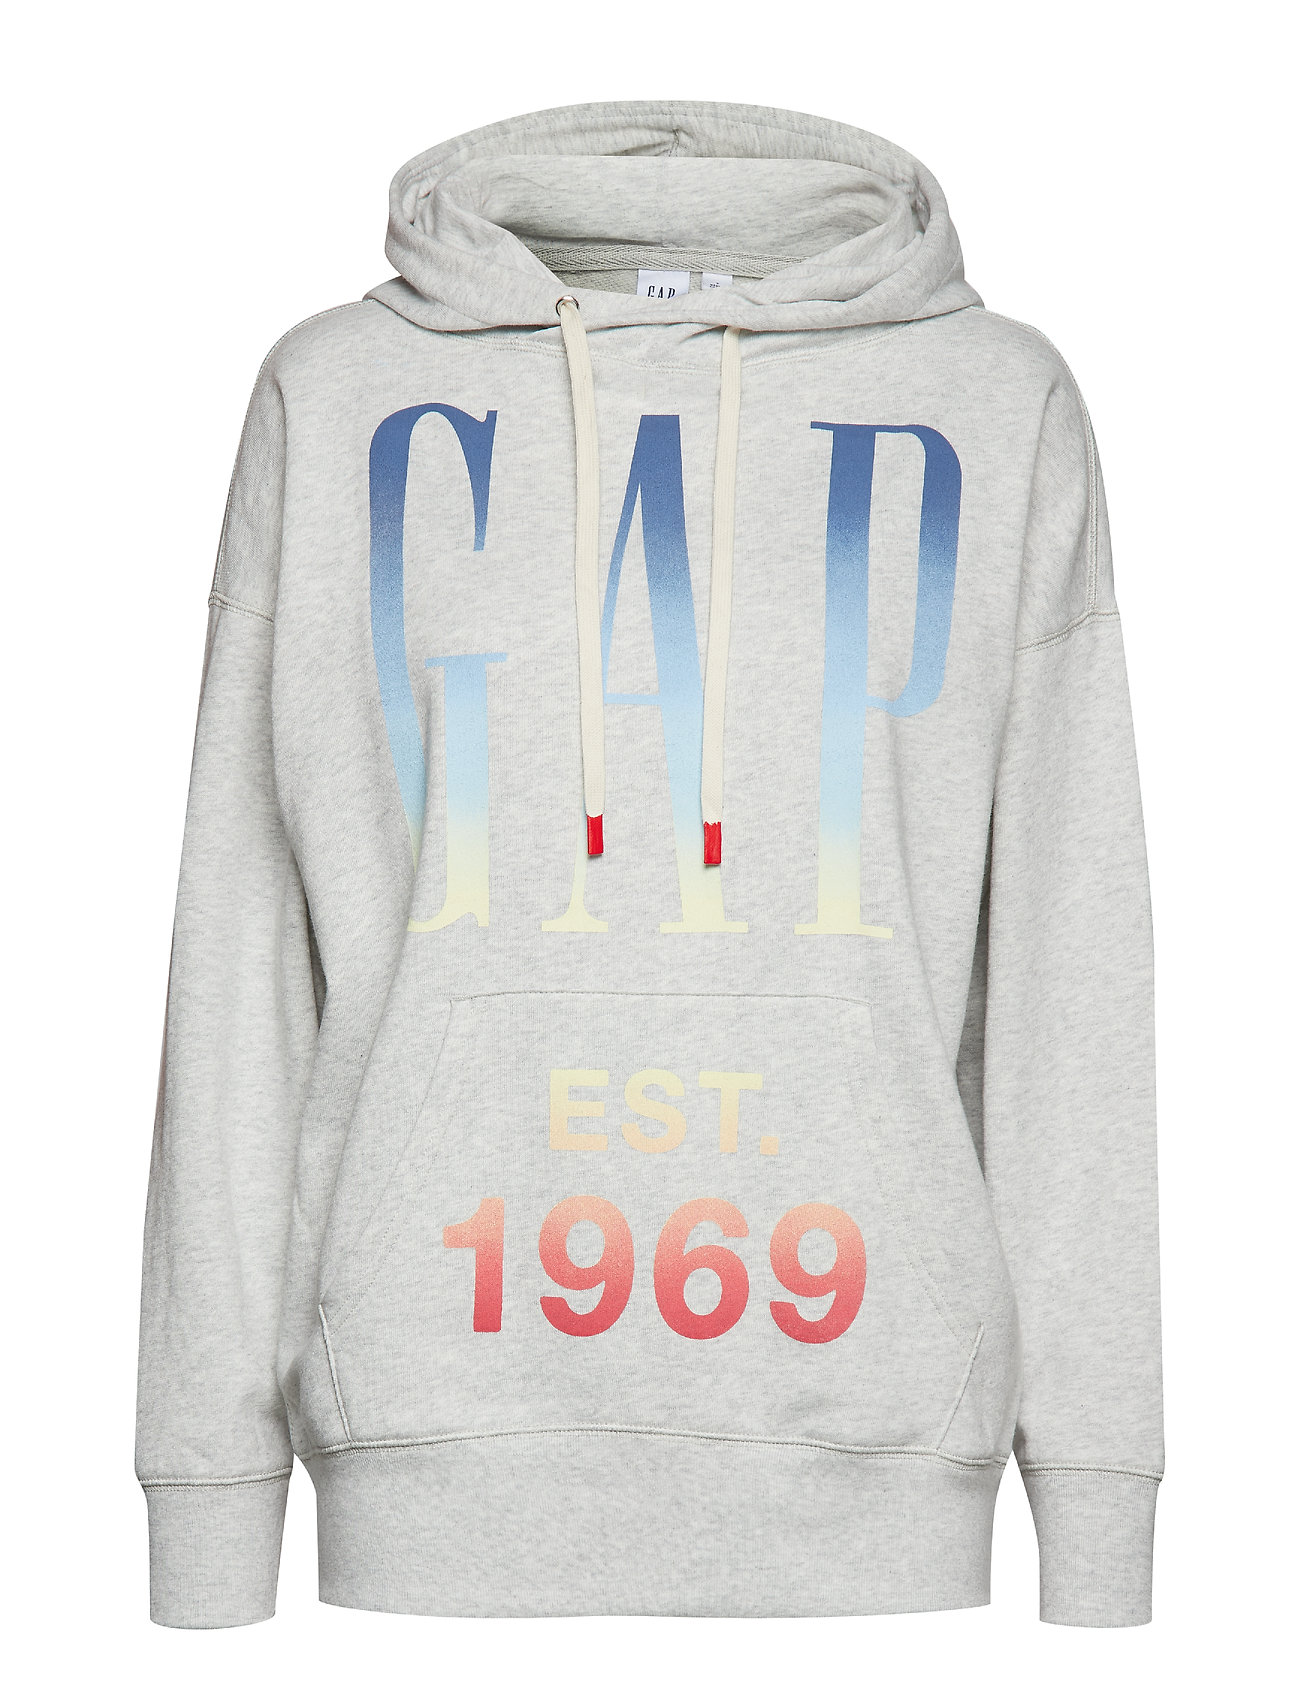 gap hoodie vintage